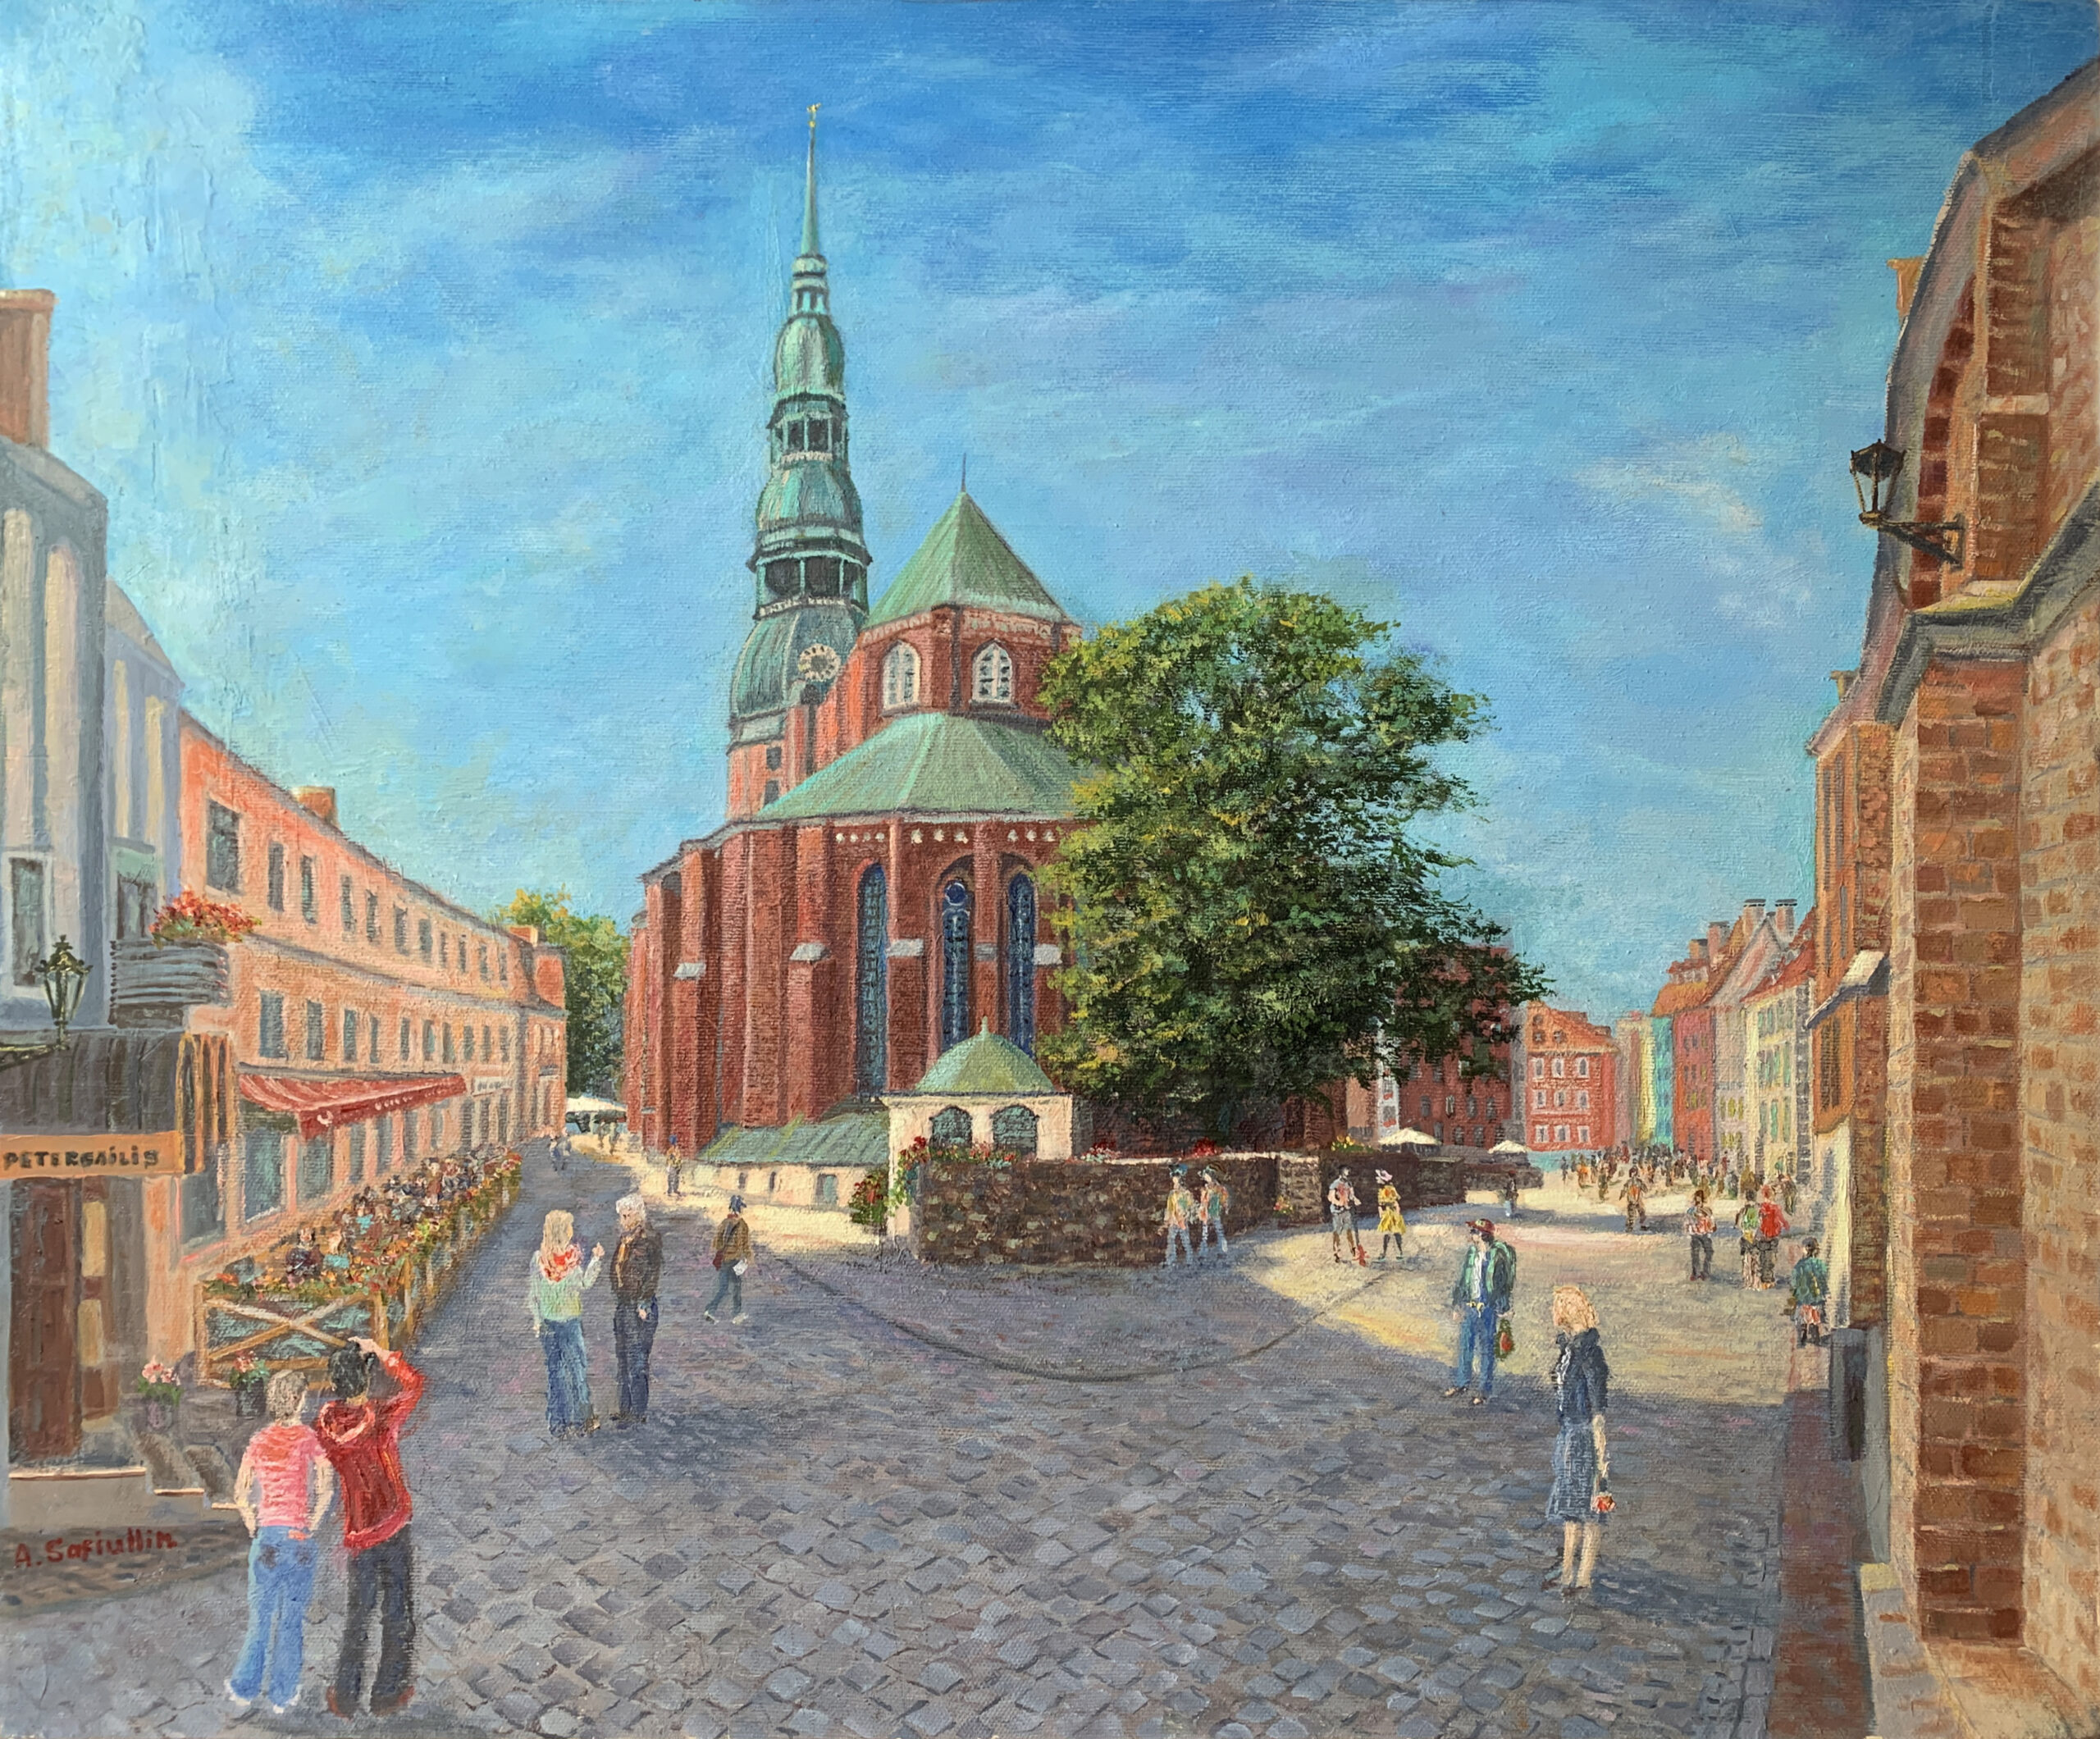 Рига Старый город Латвия пейзаж Церковь Святого Петра картина художник Альберт Сафиуллин